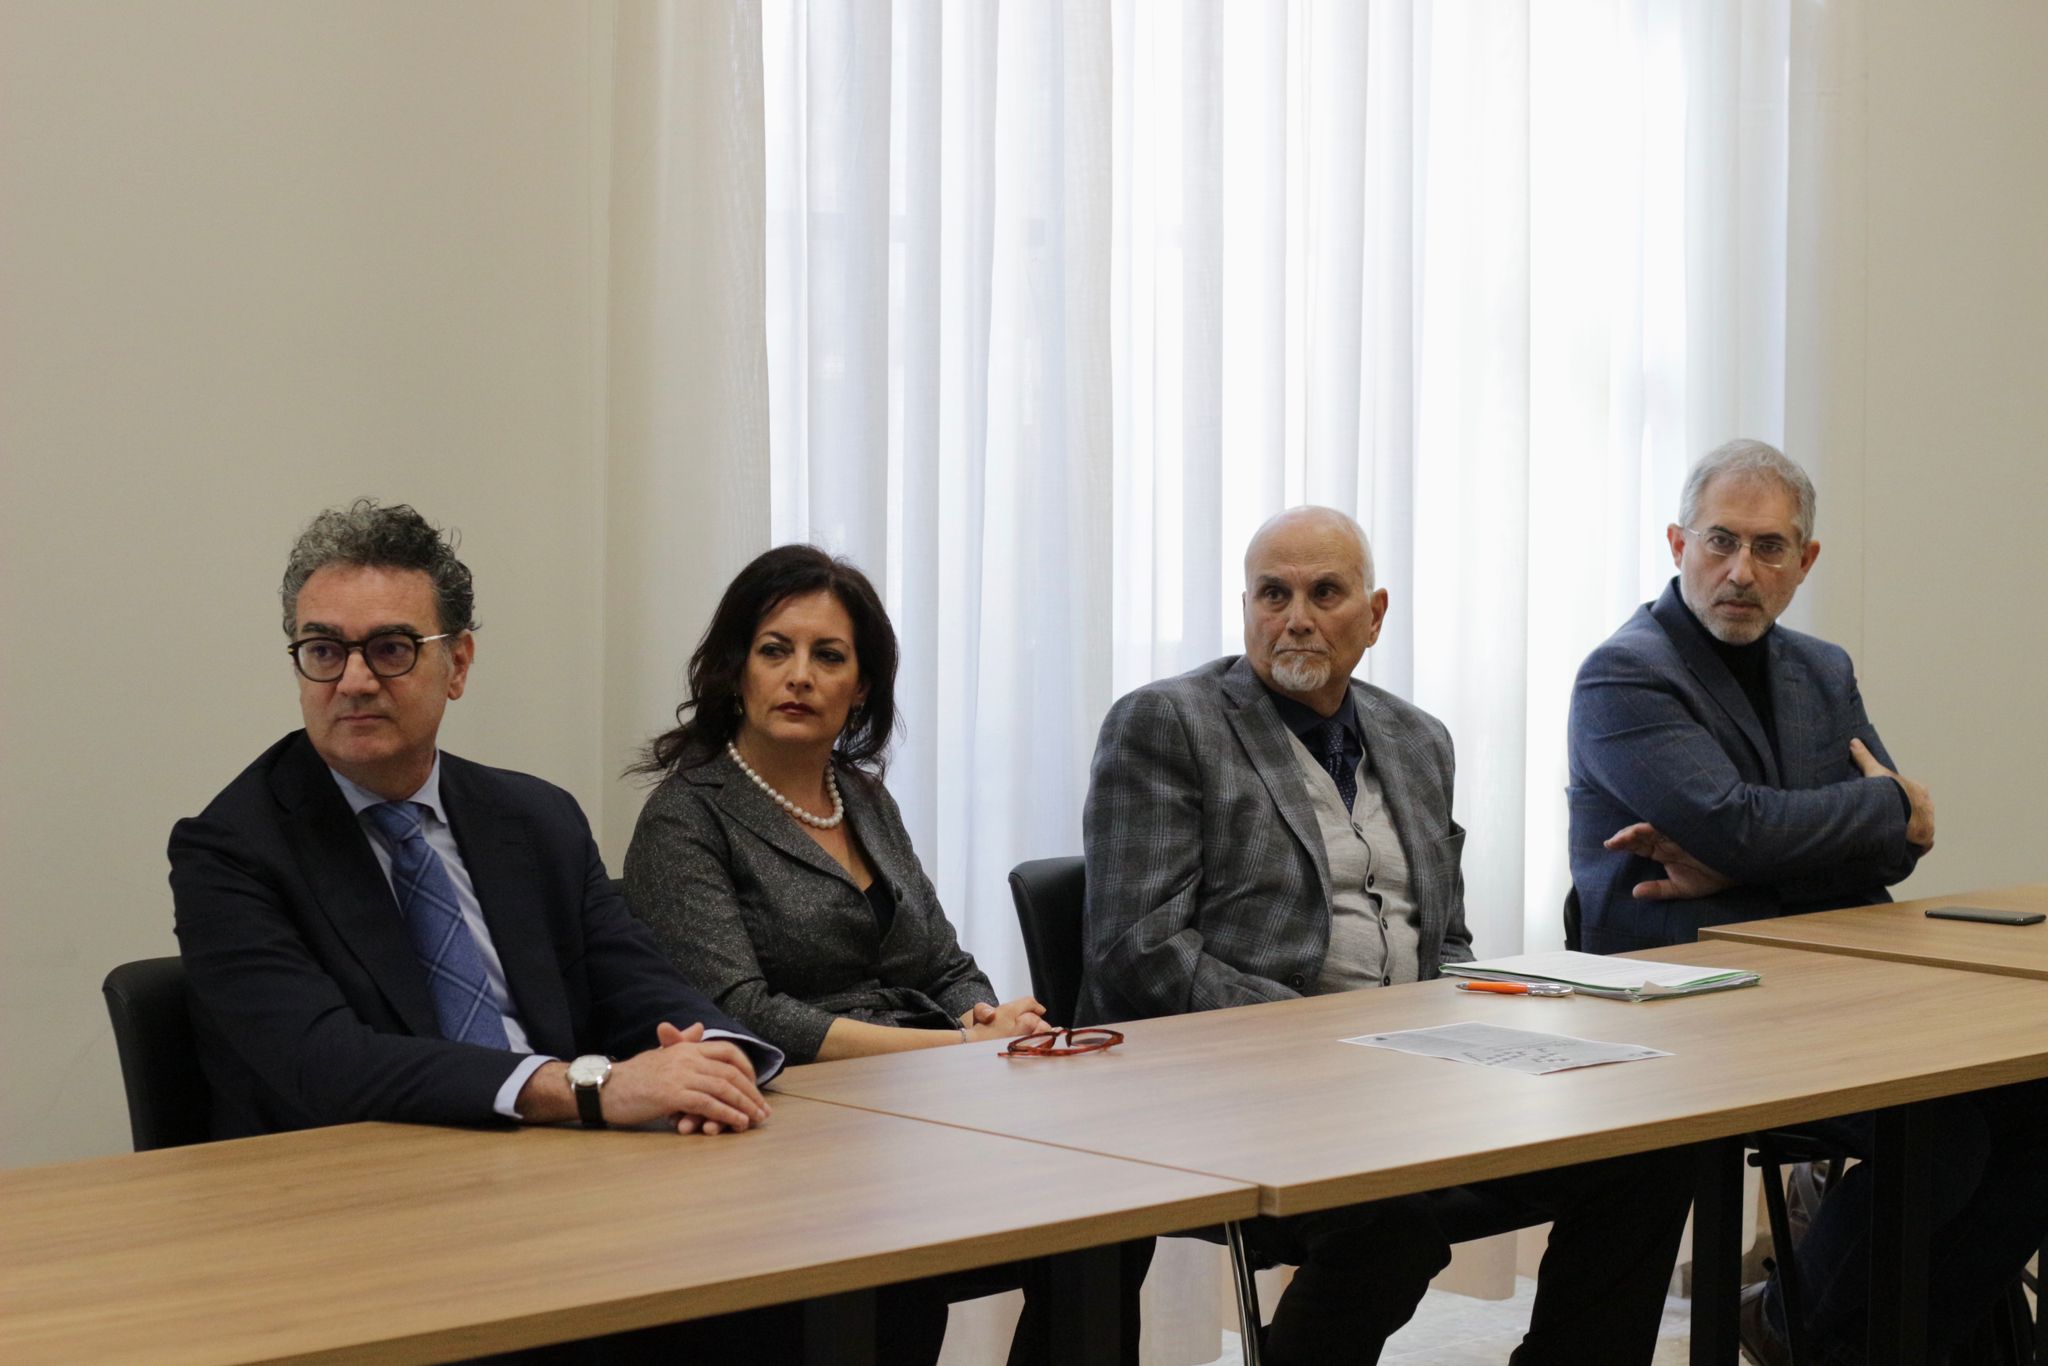 Unisannio con i Tribunali di Avellino e Benevento per abbattere l’arretrato e rendere più rapida ed efficiente la giustizia civile e penale